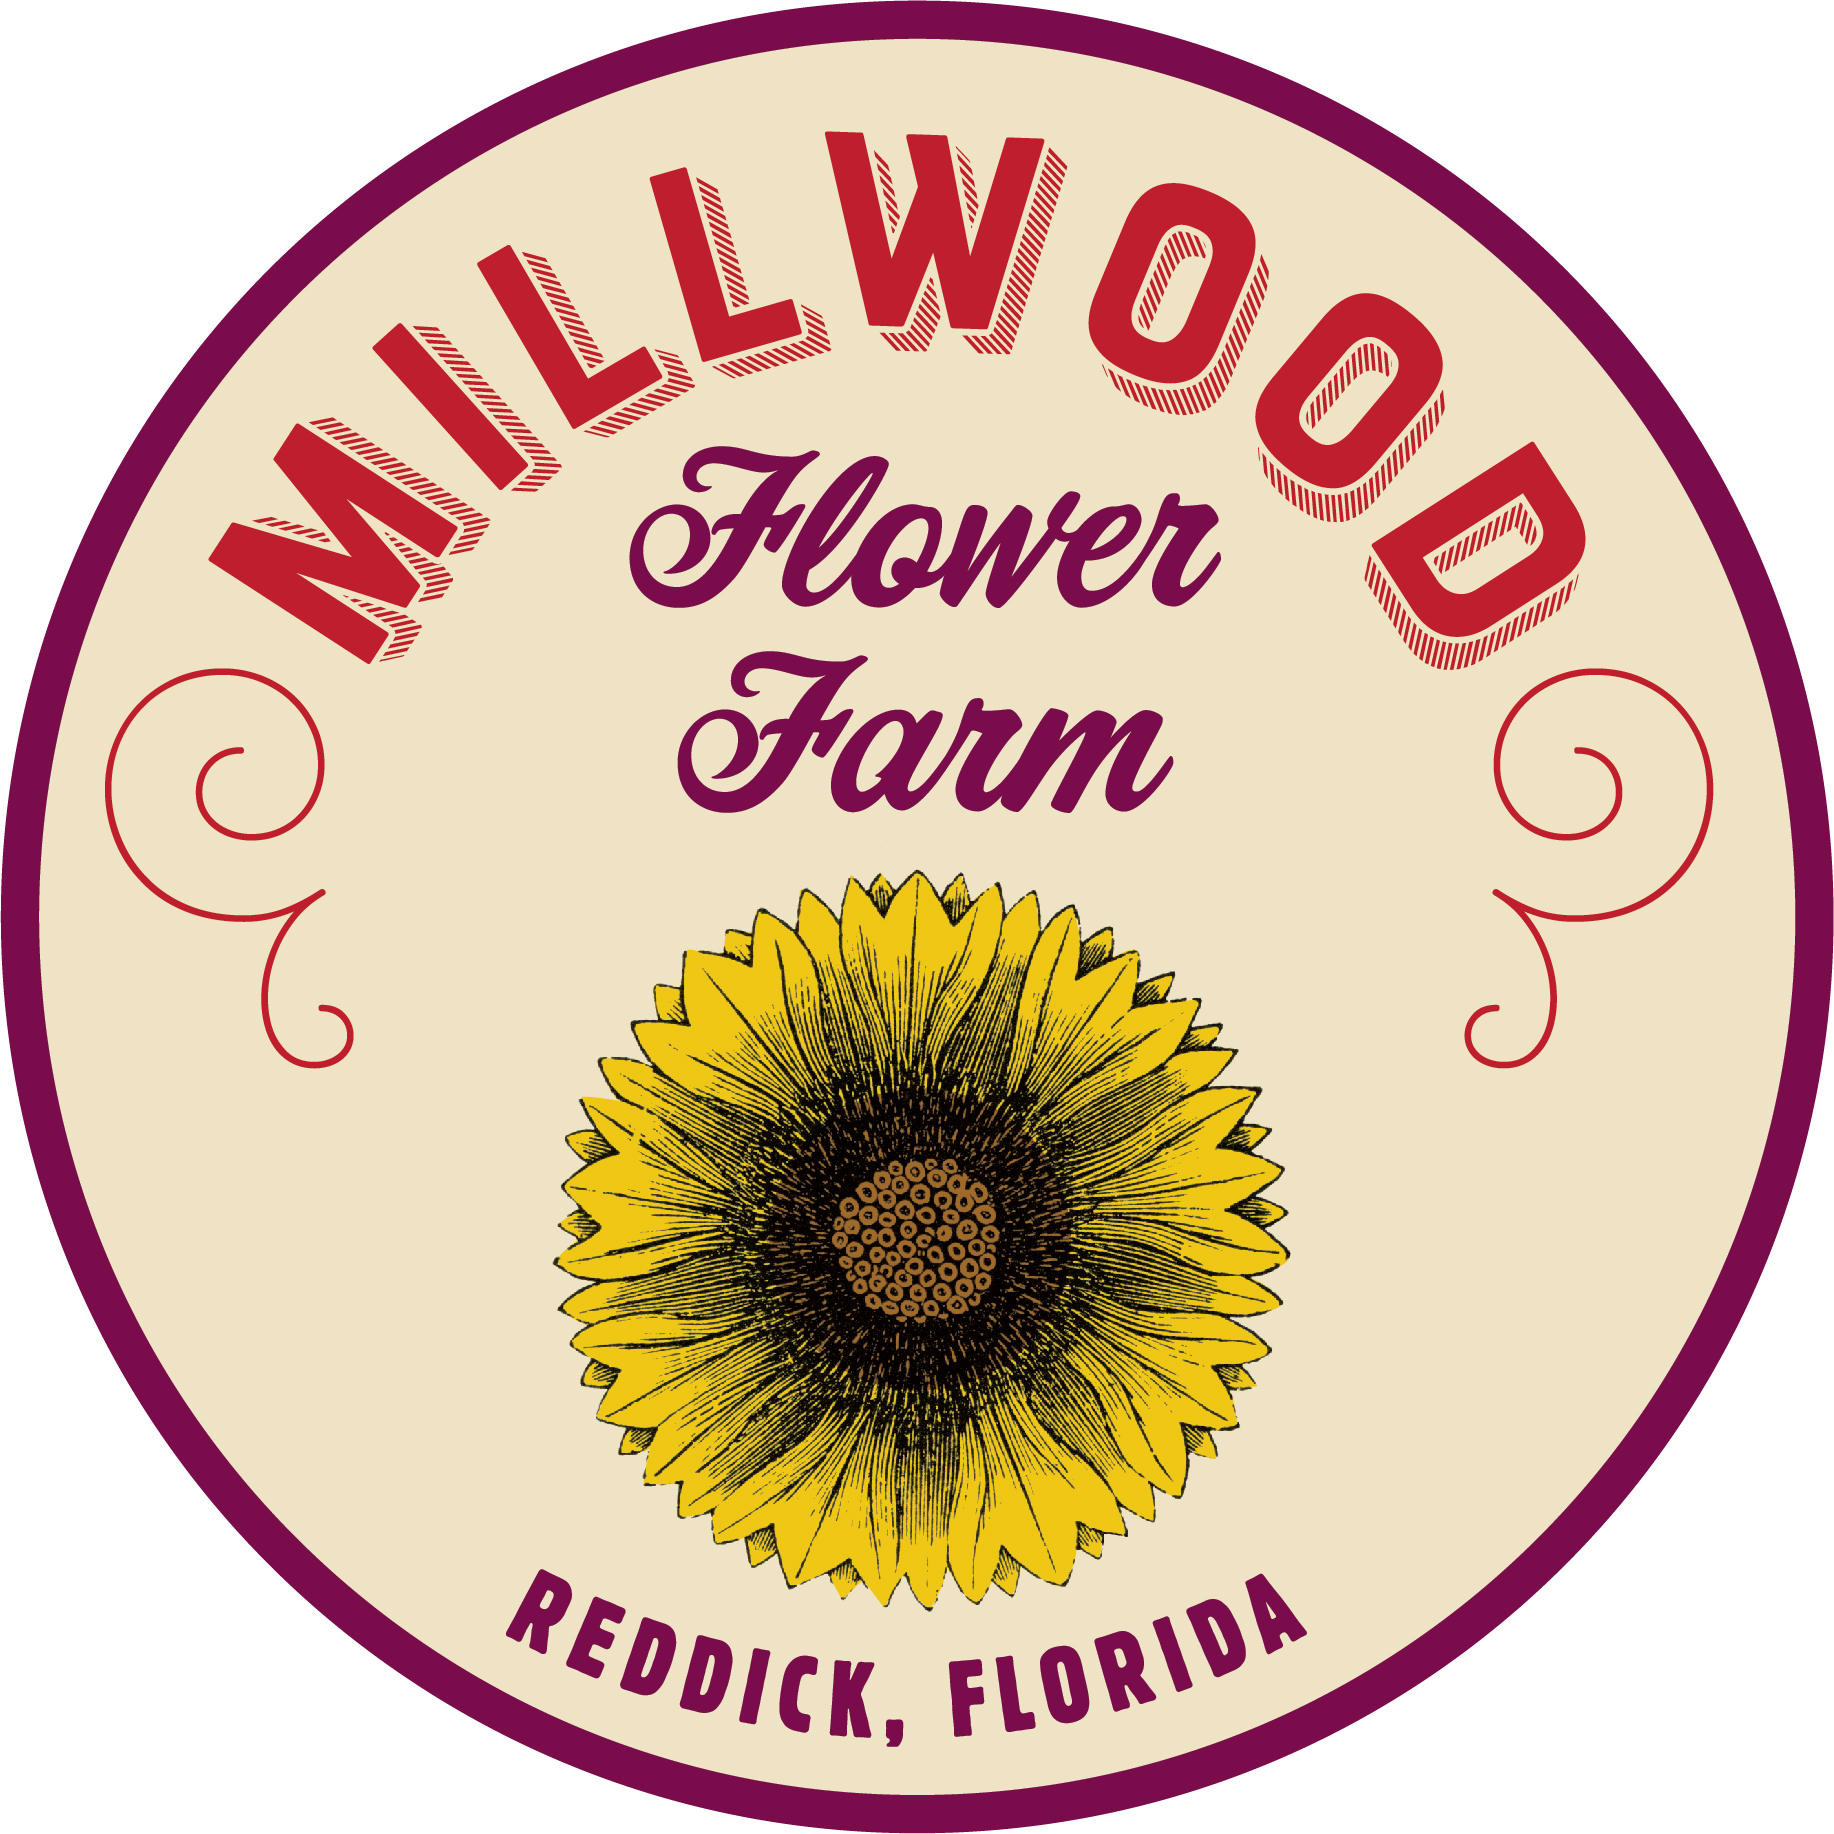 MILLWOOD FLOWER FARM